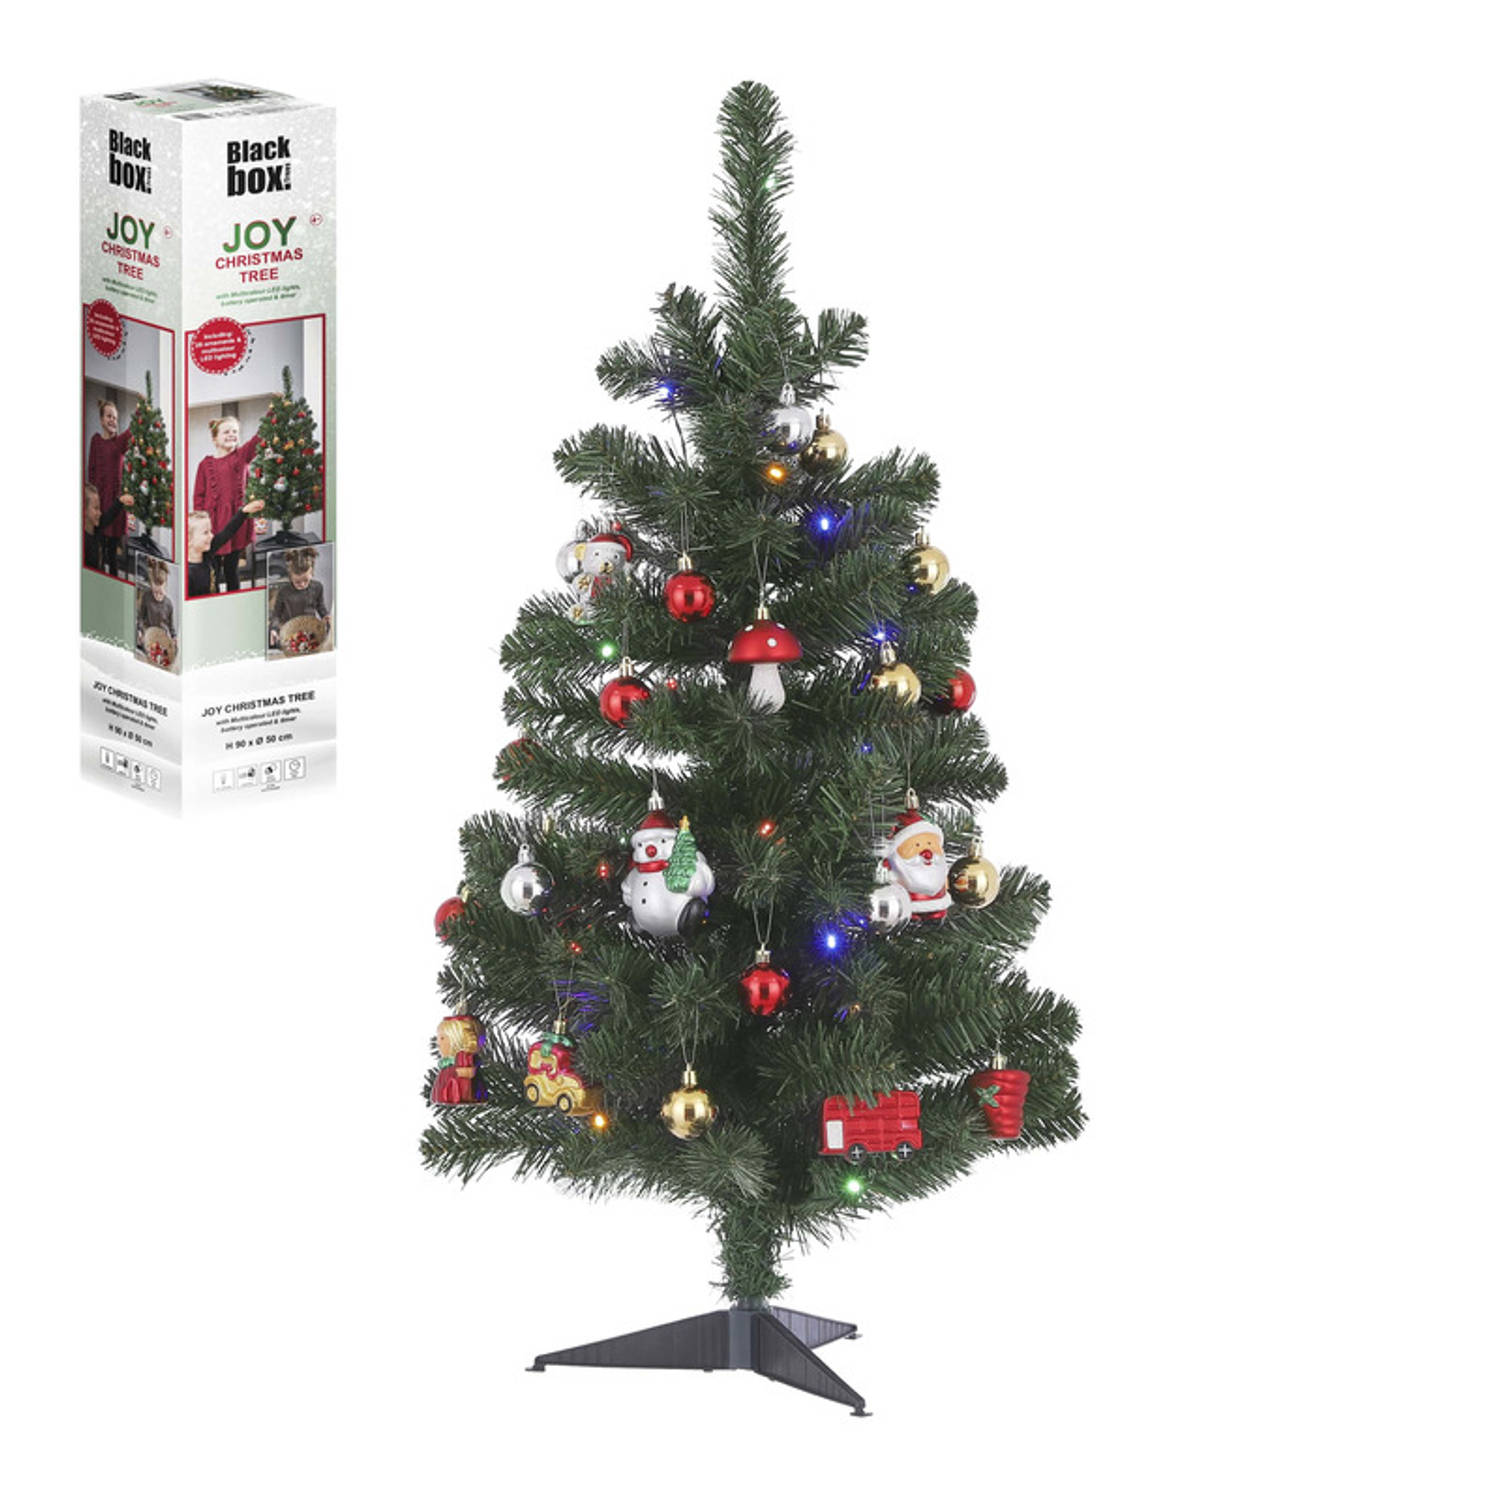 Open kwaad verloving Complete kunst kerstboom/kunstboom met versiering en verlichting 90 cm -  Kunstkerstboom | Blokker